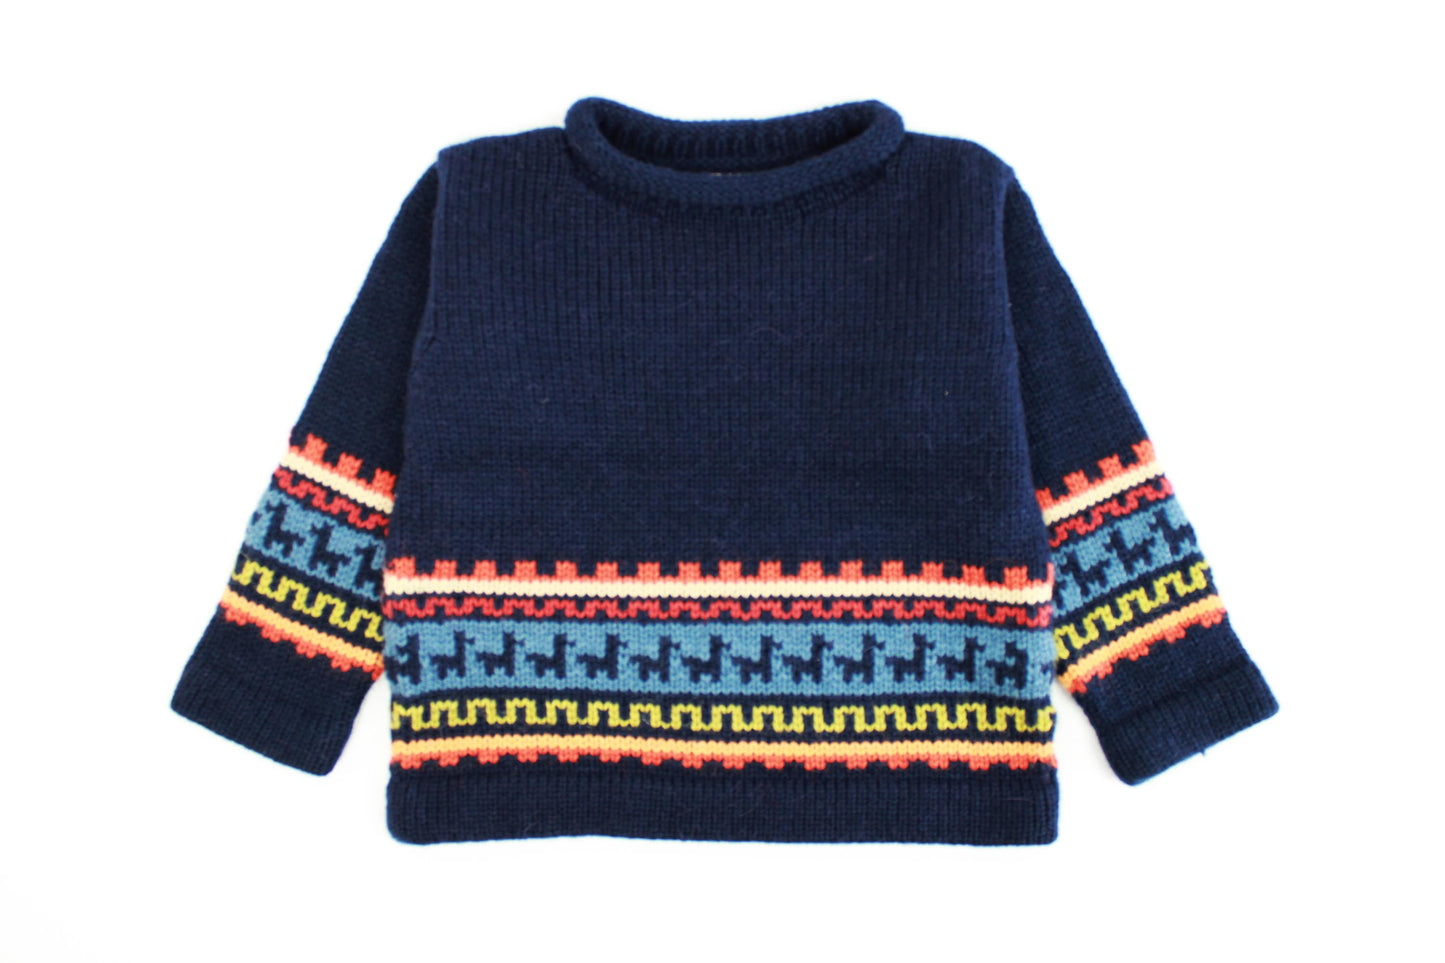 Kinderpullover 110/115 aus Alpaka handgemacht in Peru Strickpullover Herbst warm Pullover Wolle Weihnachten Geschenk Geburtstag Kindermode